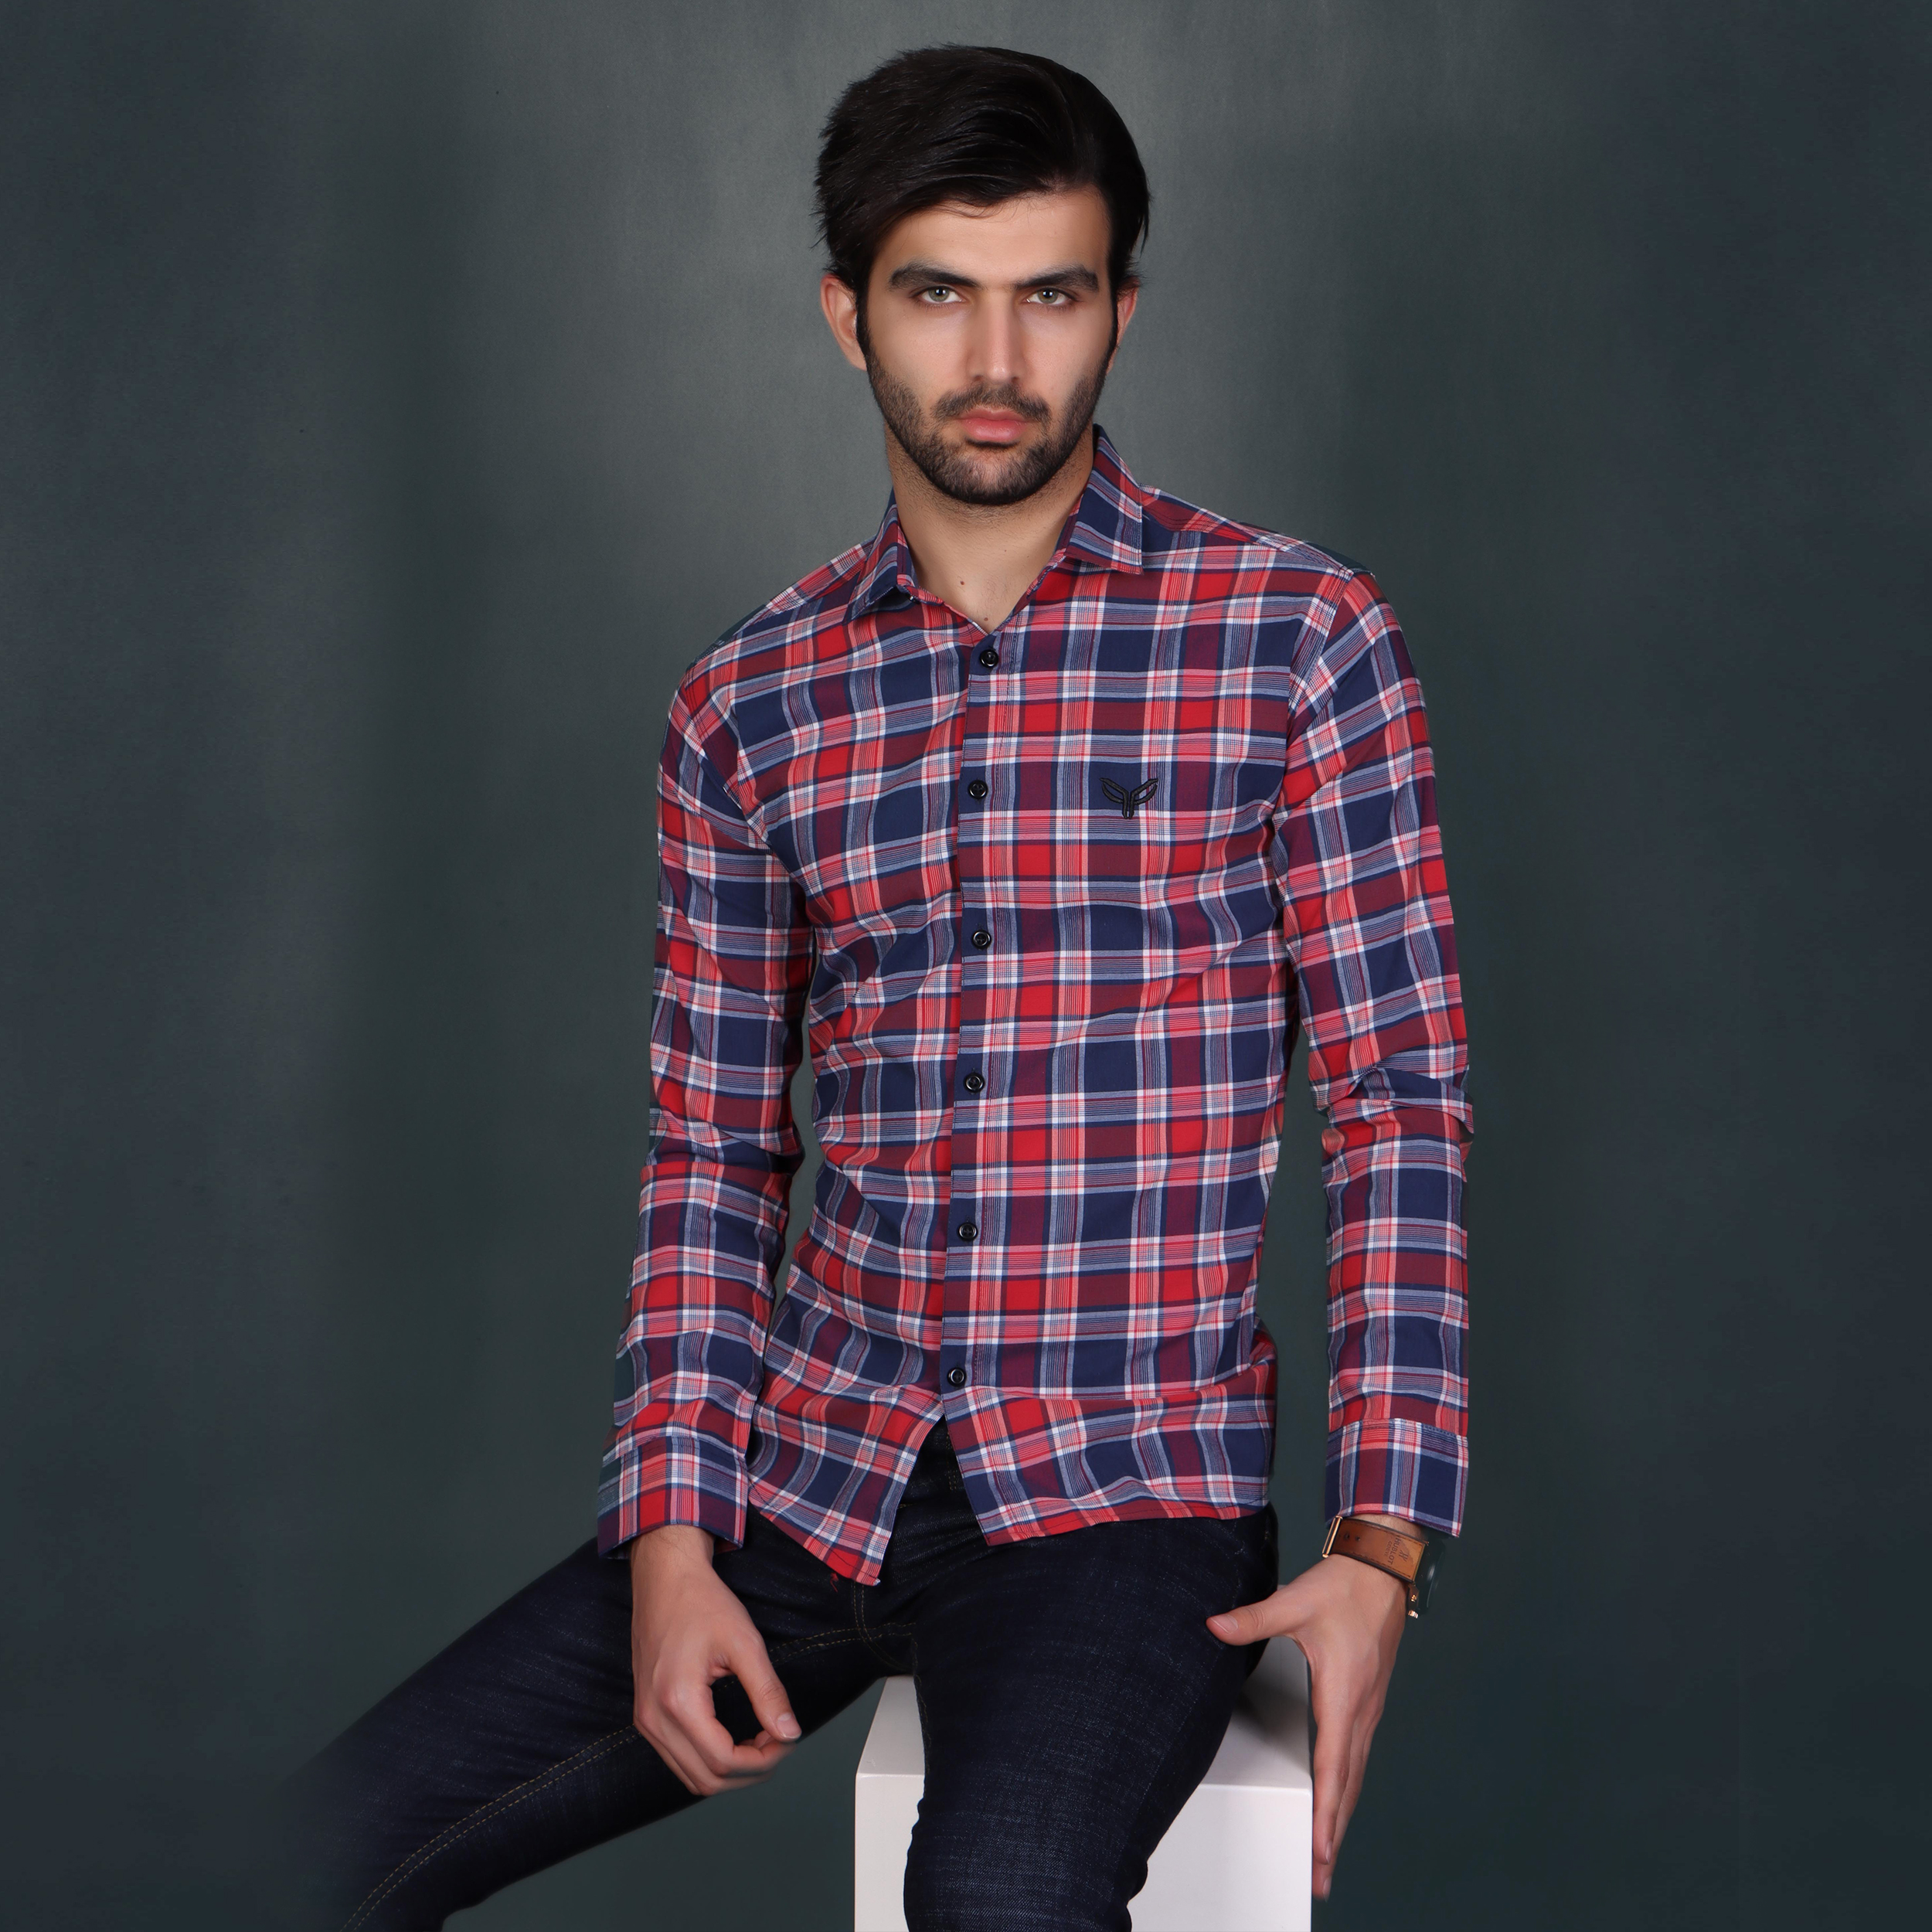 نکته خرید - قیمت روز پیراهن آستین بلند مردانه پیکی پوش مدل M02486 خرید